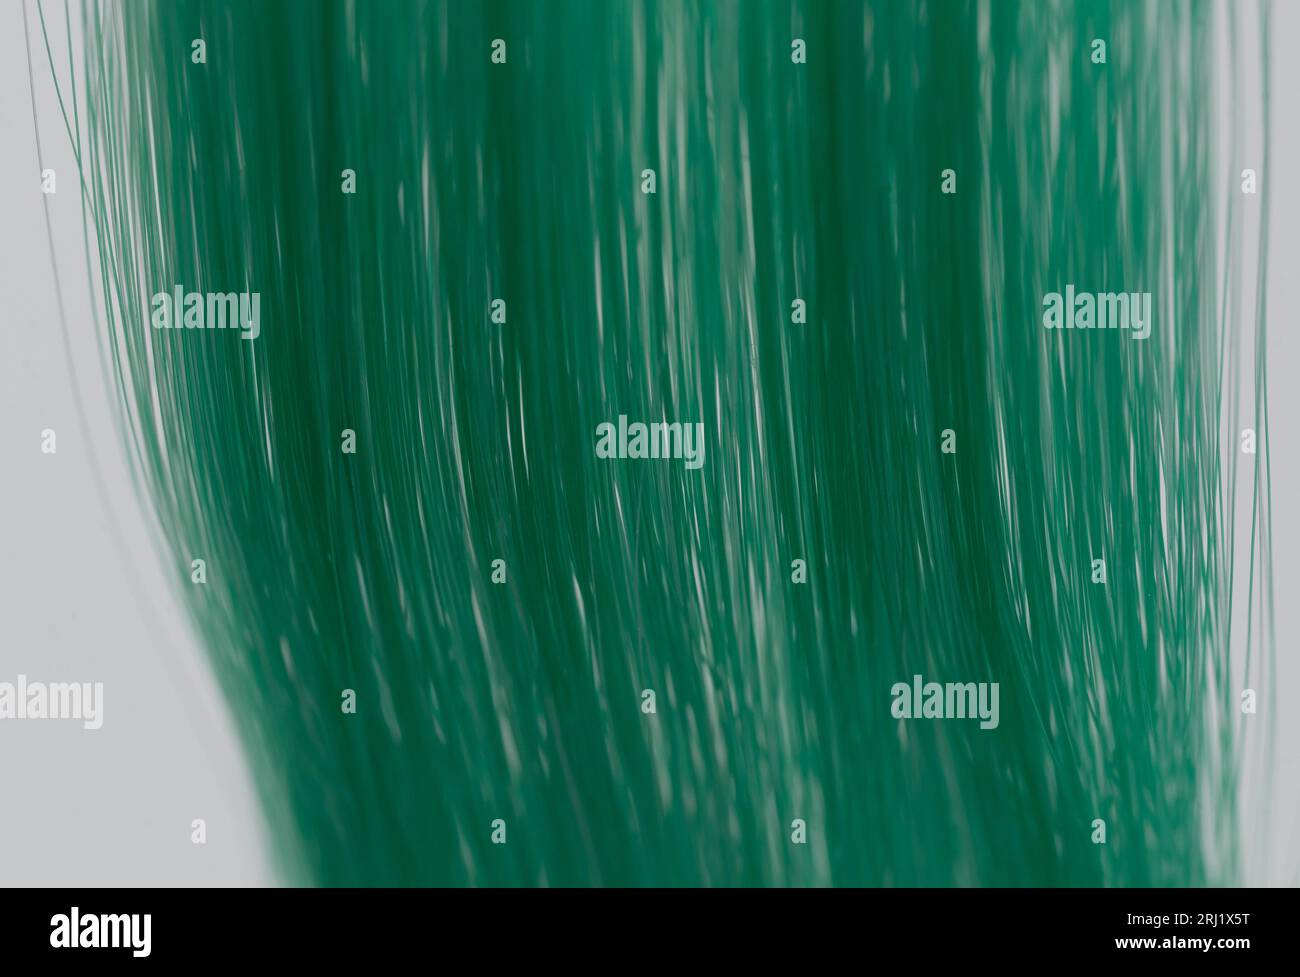 Grüner Haarhintergrund. Nahaufnahme der Haarperücke in grüner Farbe Stockfoto